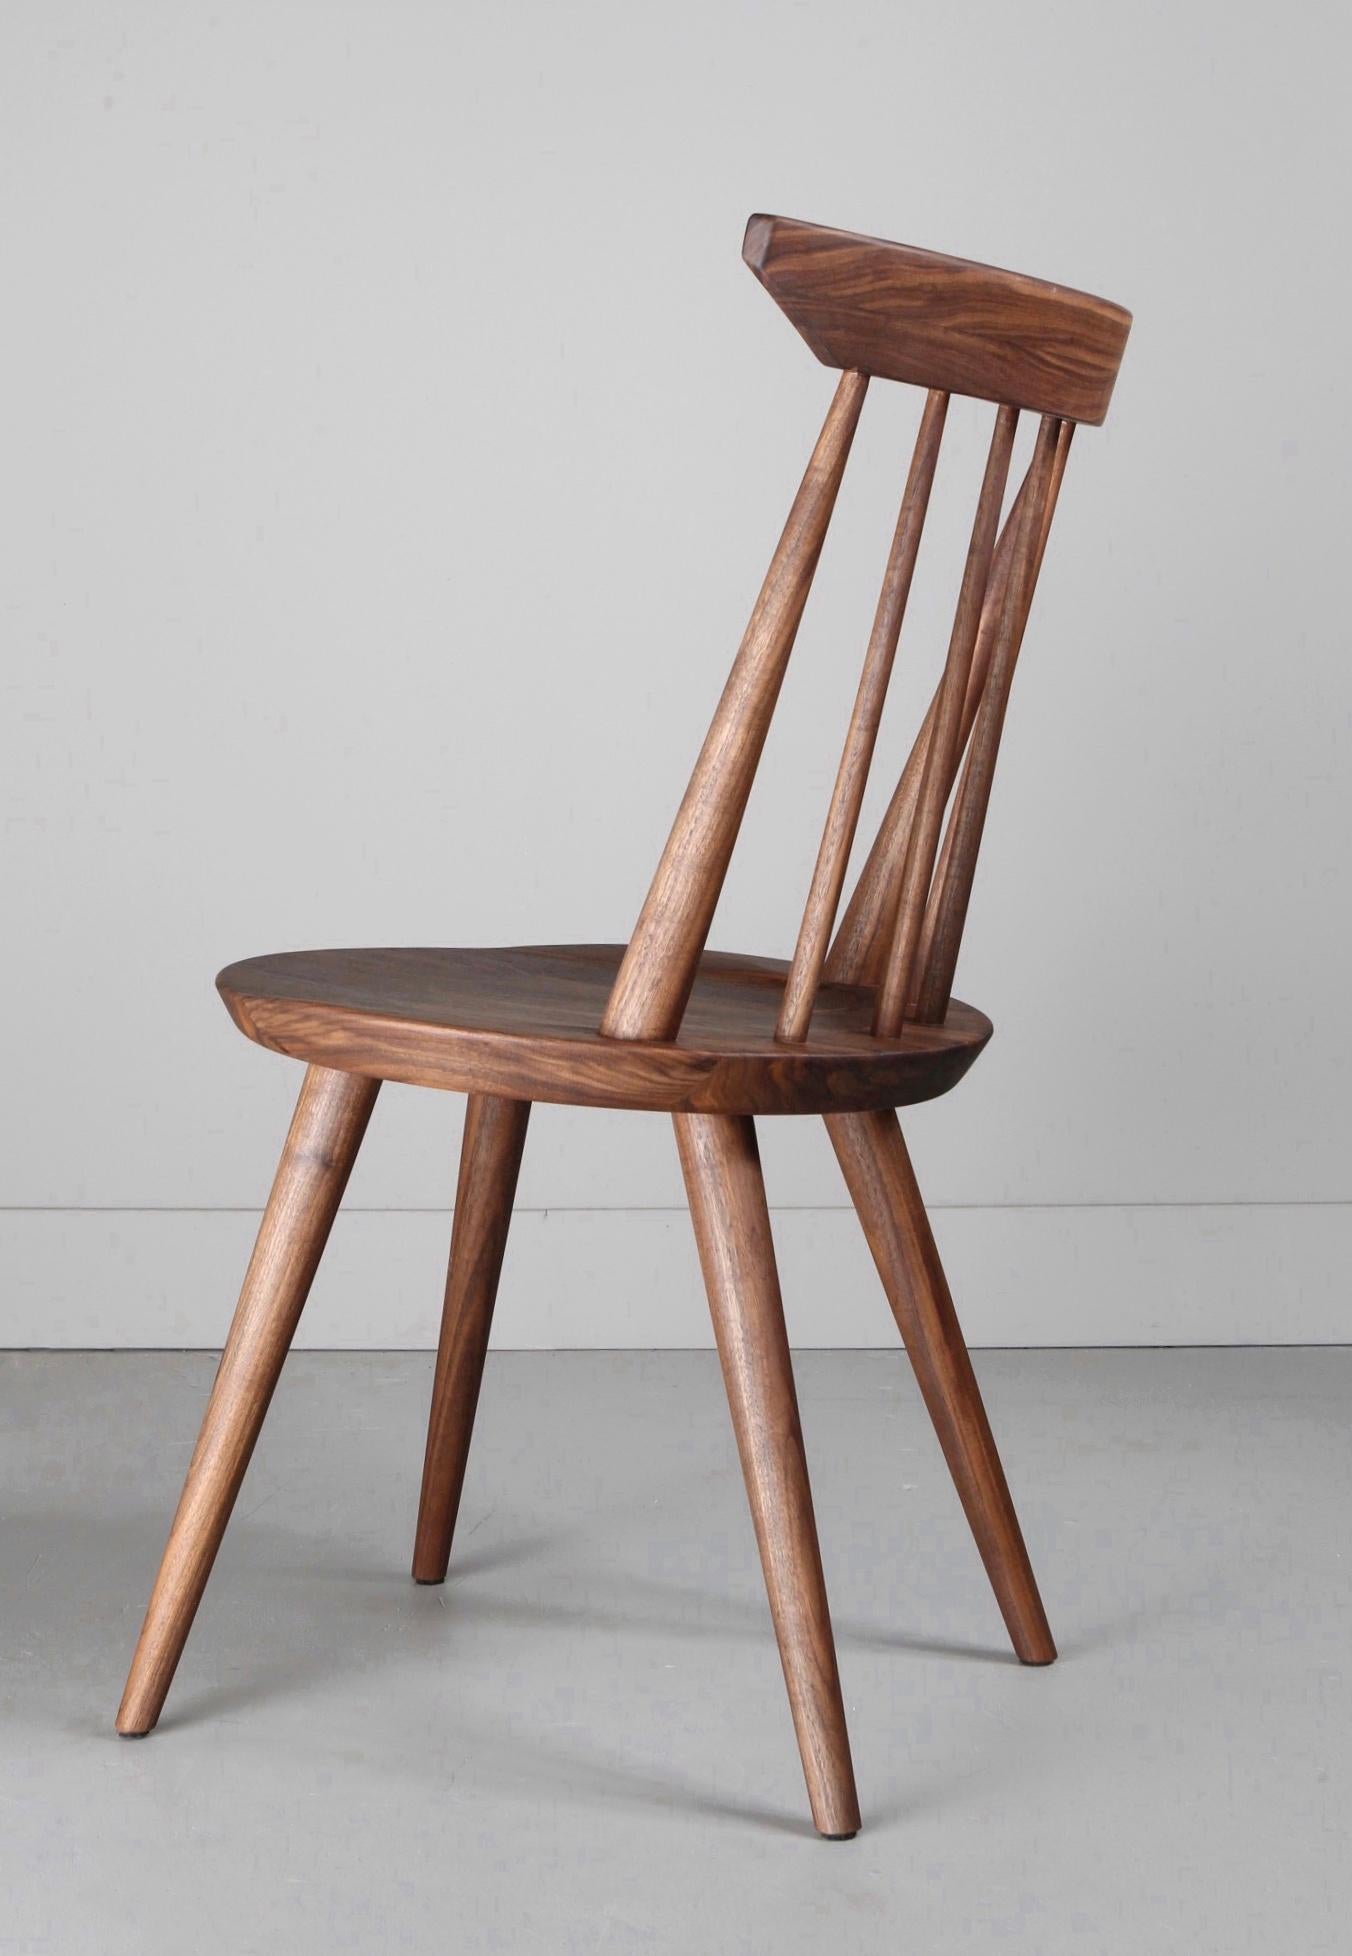 Der Vände-Stuhl ist eine moderne Interpretation des klassischen Windsor-Stuhls. Die handgedrechselten Spindeln sind verkeilt und mit Zapfen und Schlössern versehen, um Stärke und Ästhetik zu gewährleisten.

Die runde Sitzfläche wurde für mehr